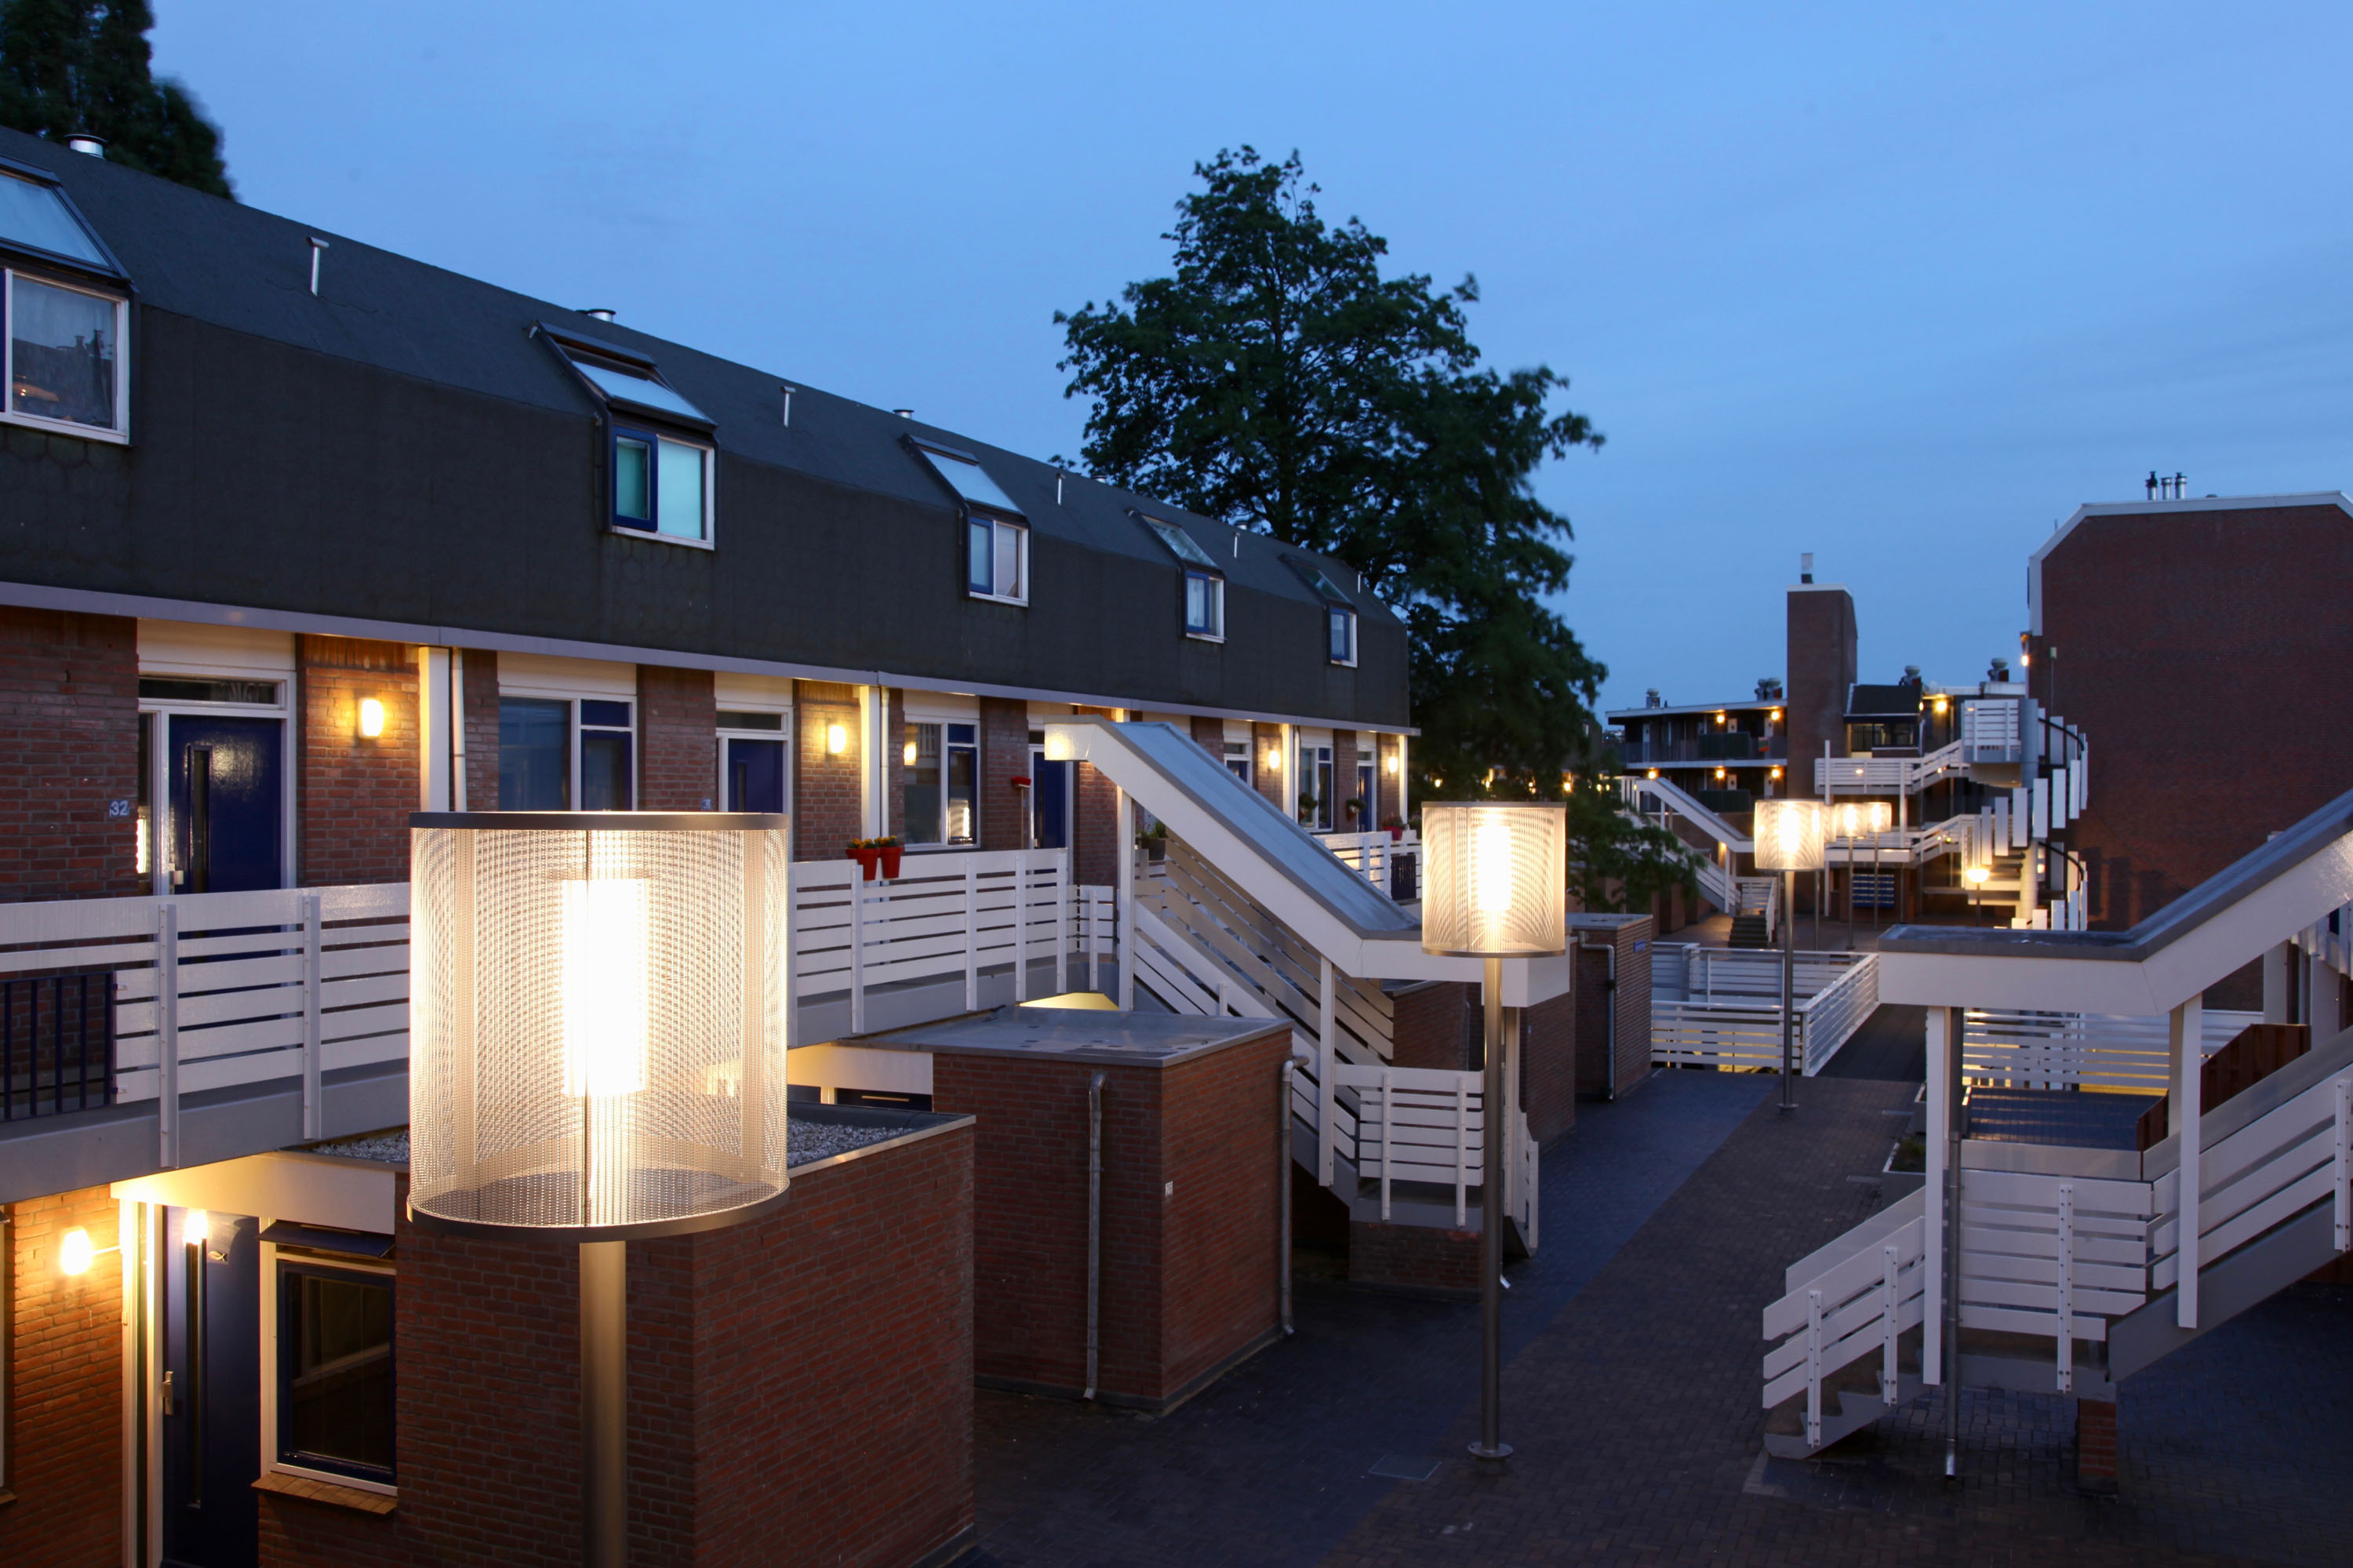 luminaires Modernista, lighting in residential area